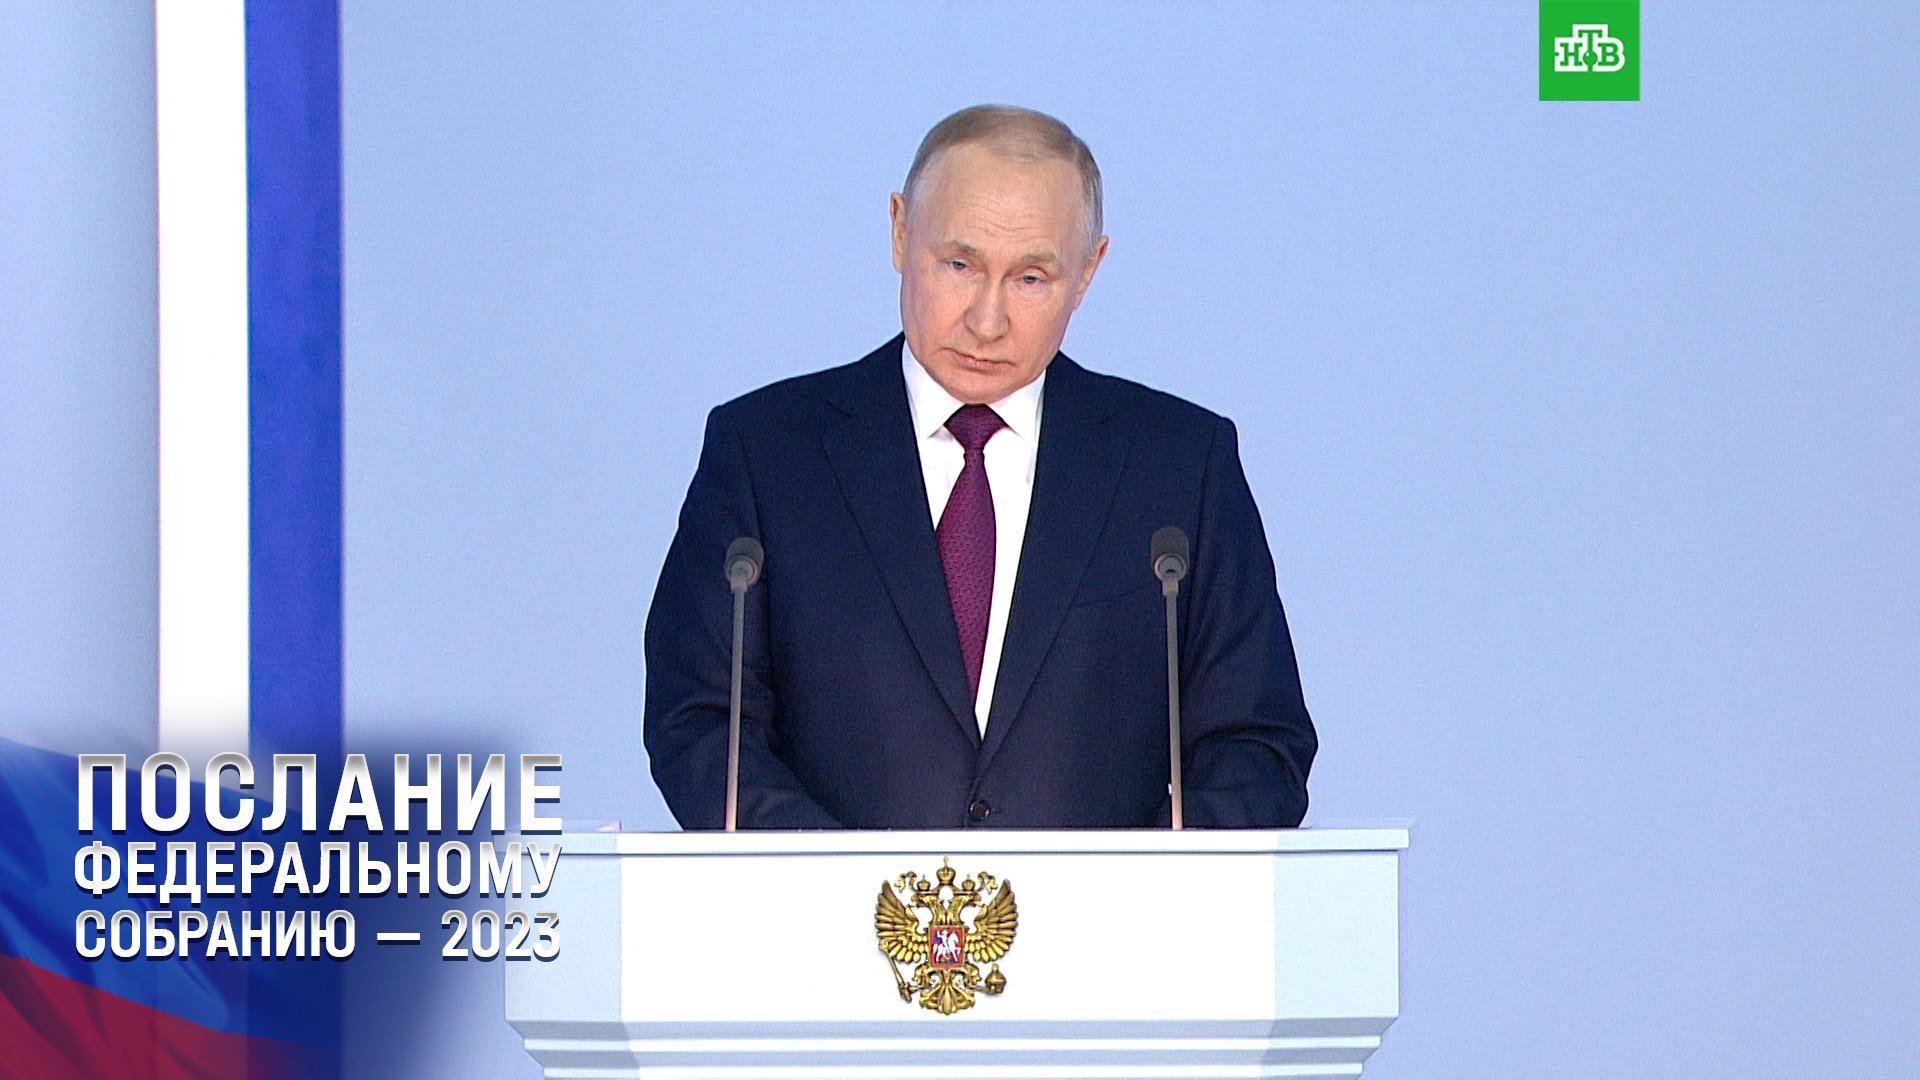 Путин: будем аккуратно решать стоящие перед нами задачи